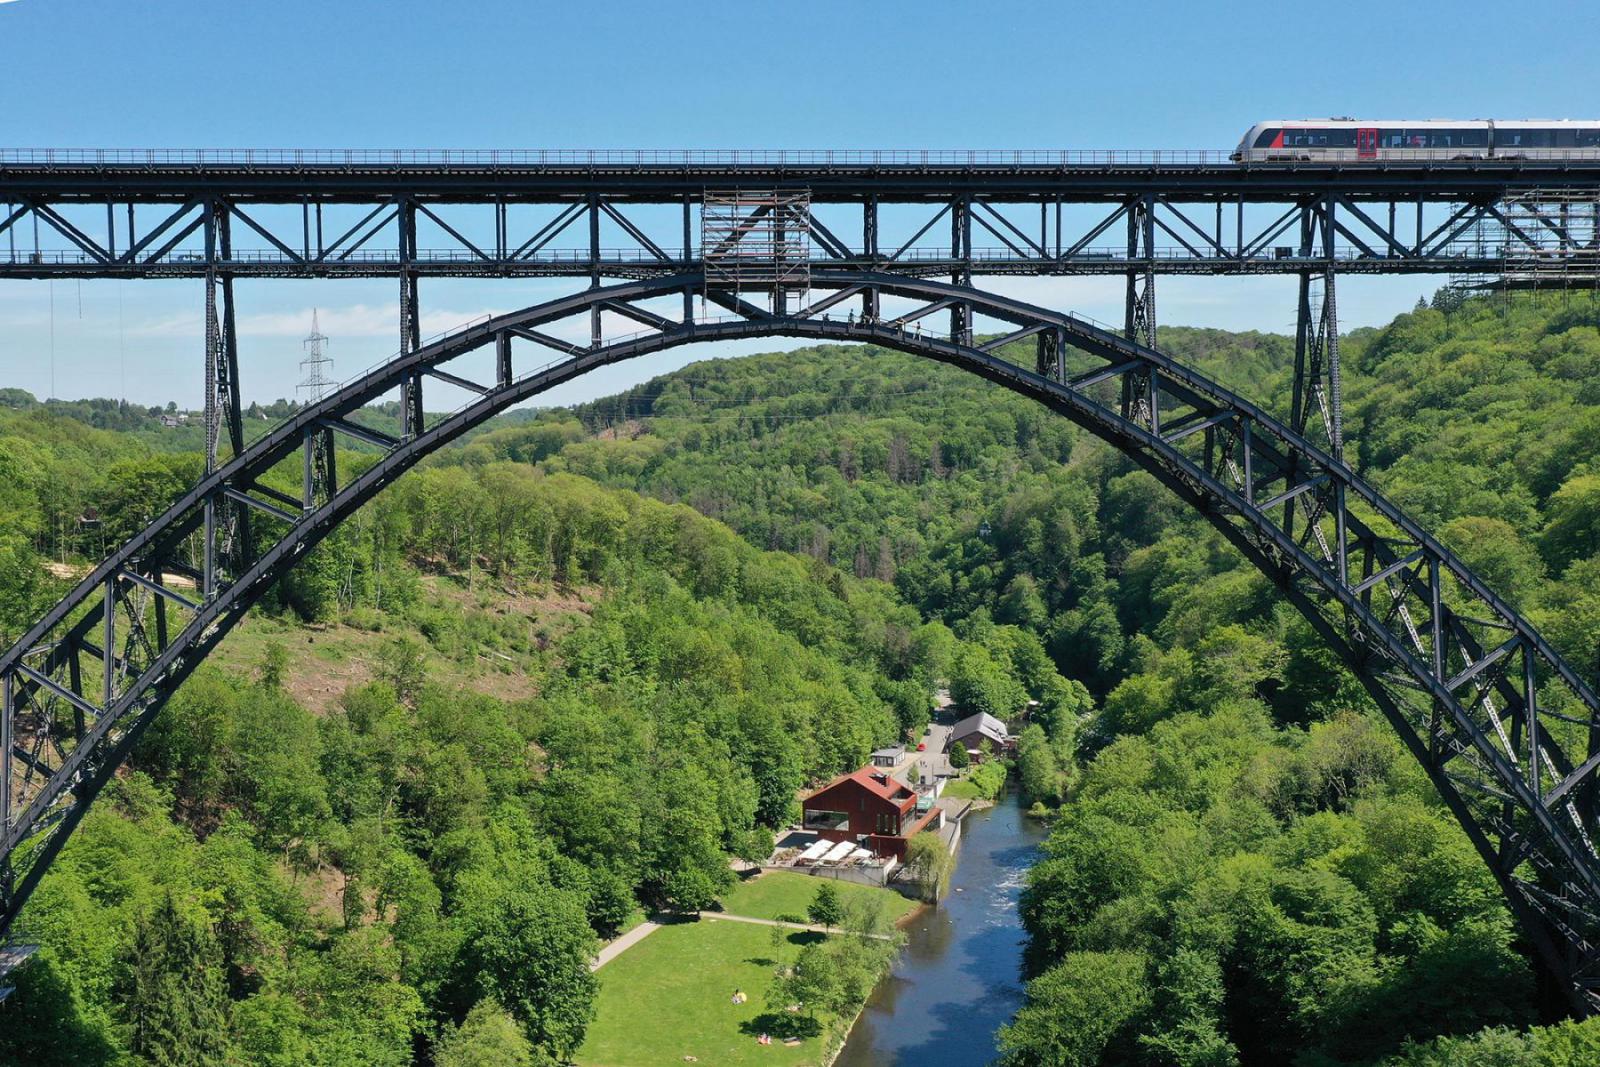 De iconische Müngstener Brücke verbindt Solingen en Remscheid | Simon Says